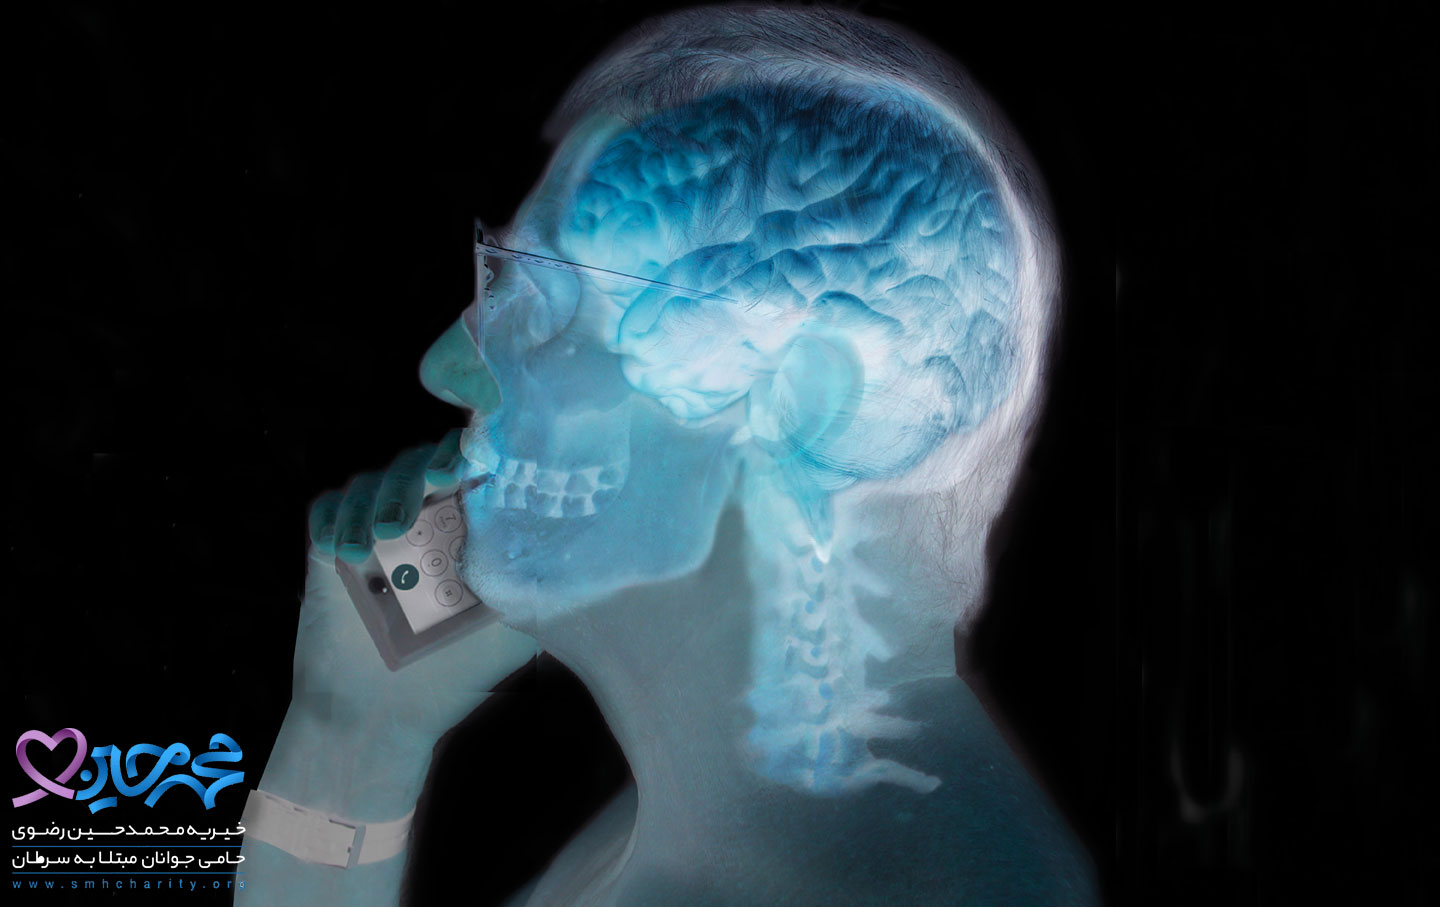 آیا تلفن های همراه باعث سرطان مغز می شوند؟